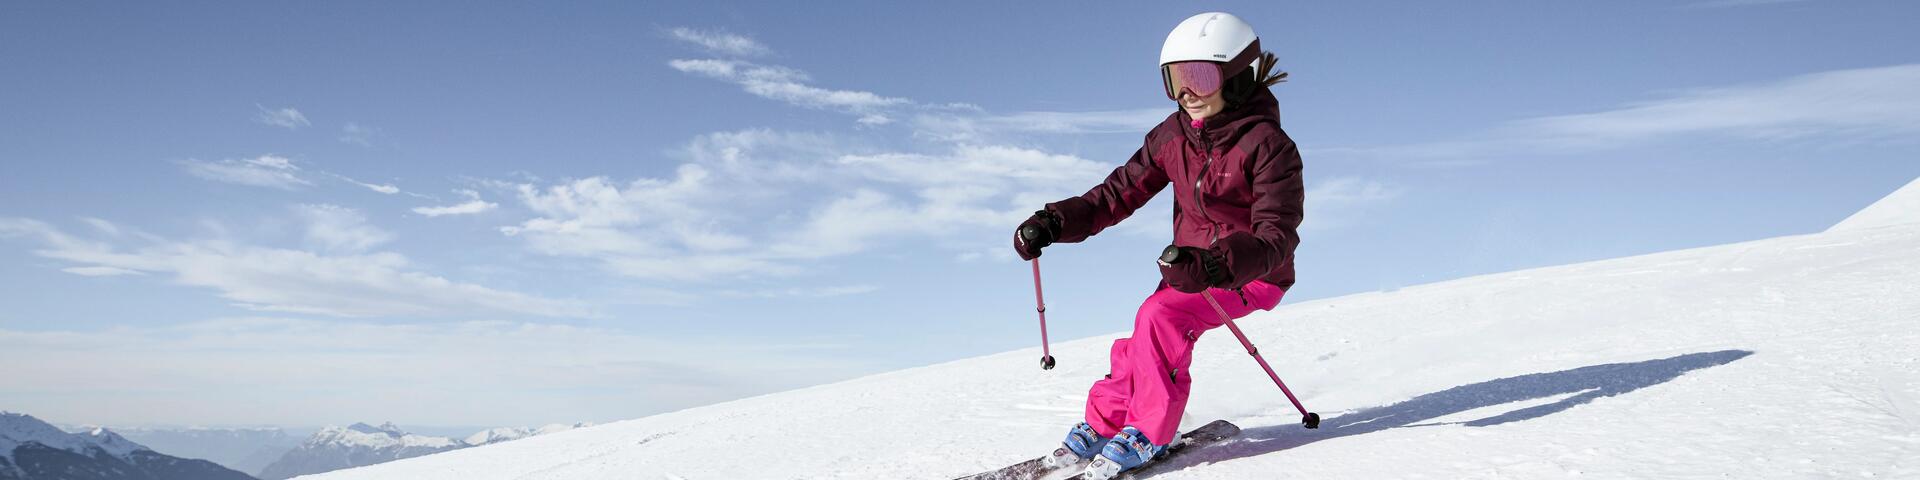 Hoe beter draaien op ski's?